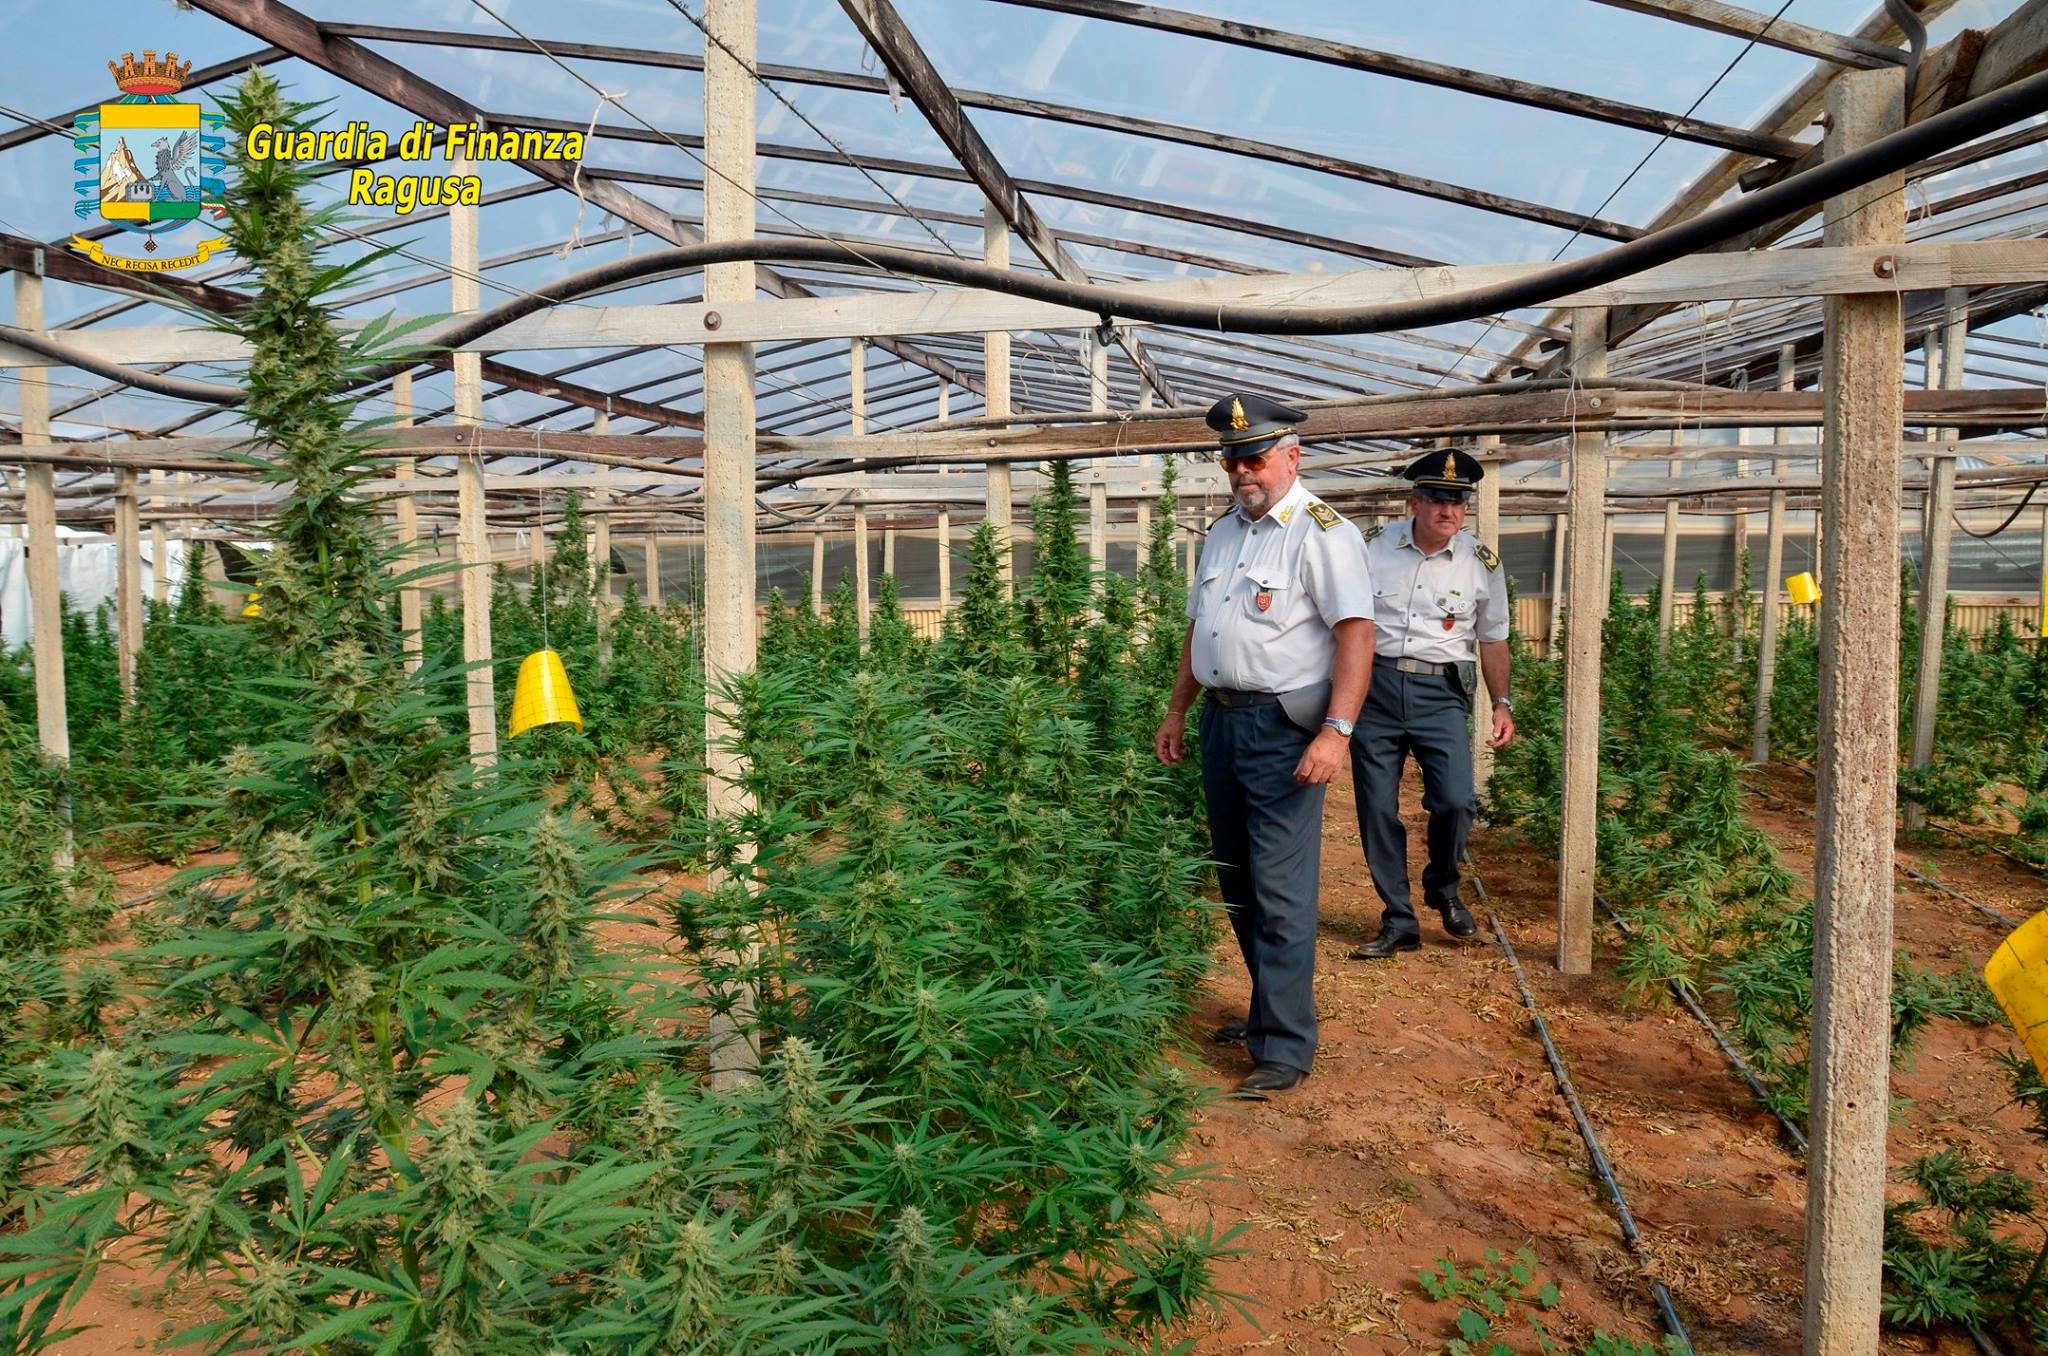  Vittoria – Sequestrata piantagione di cannabis di 6000 metri quadri: tre arresti in flagranza